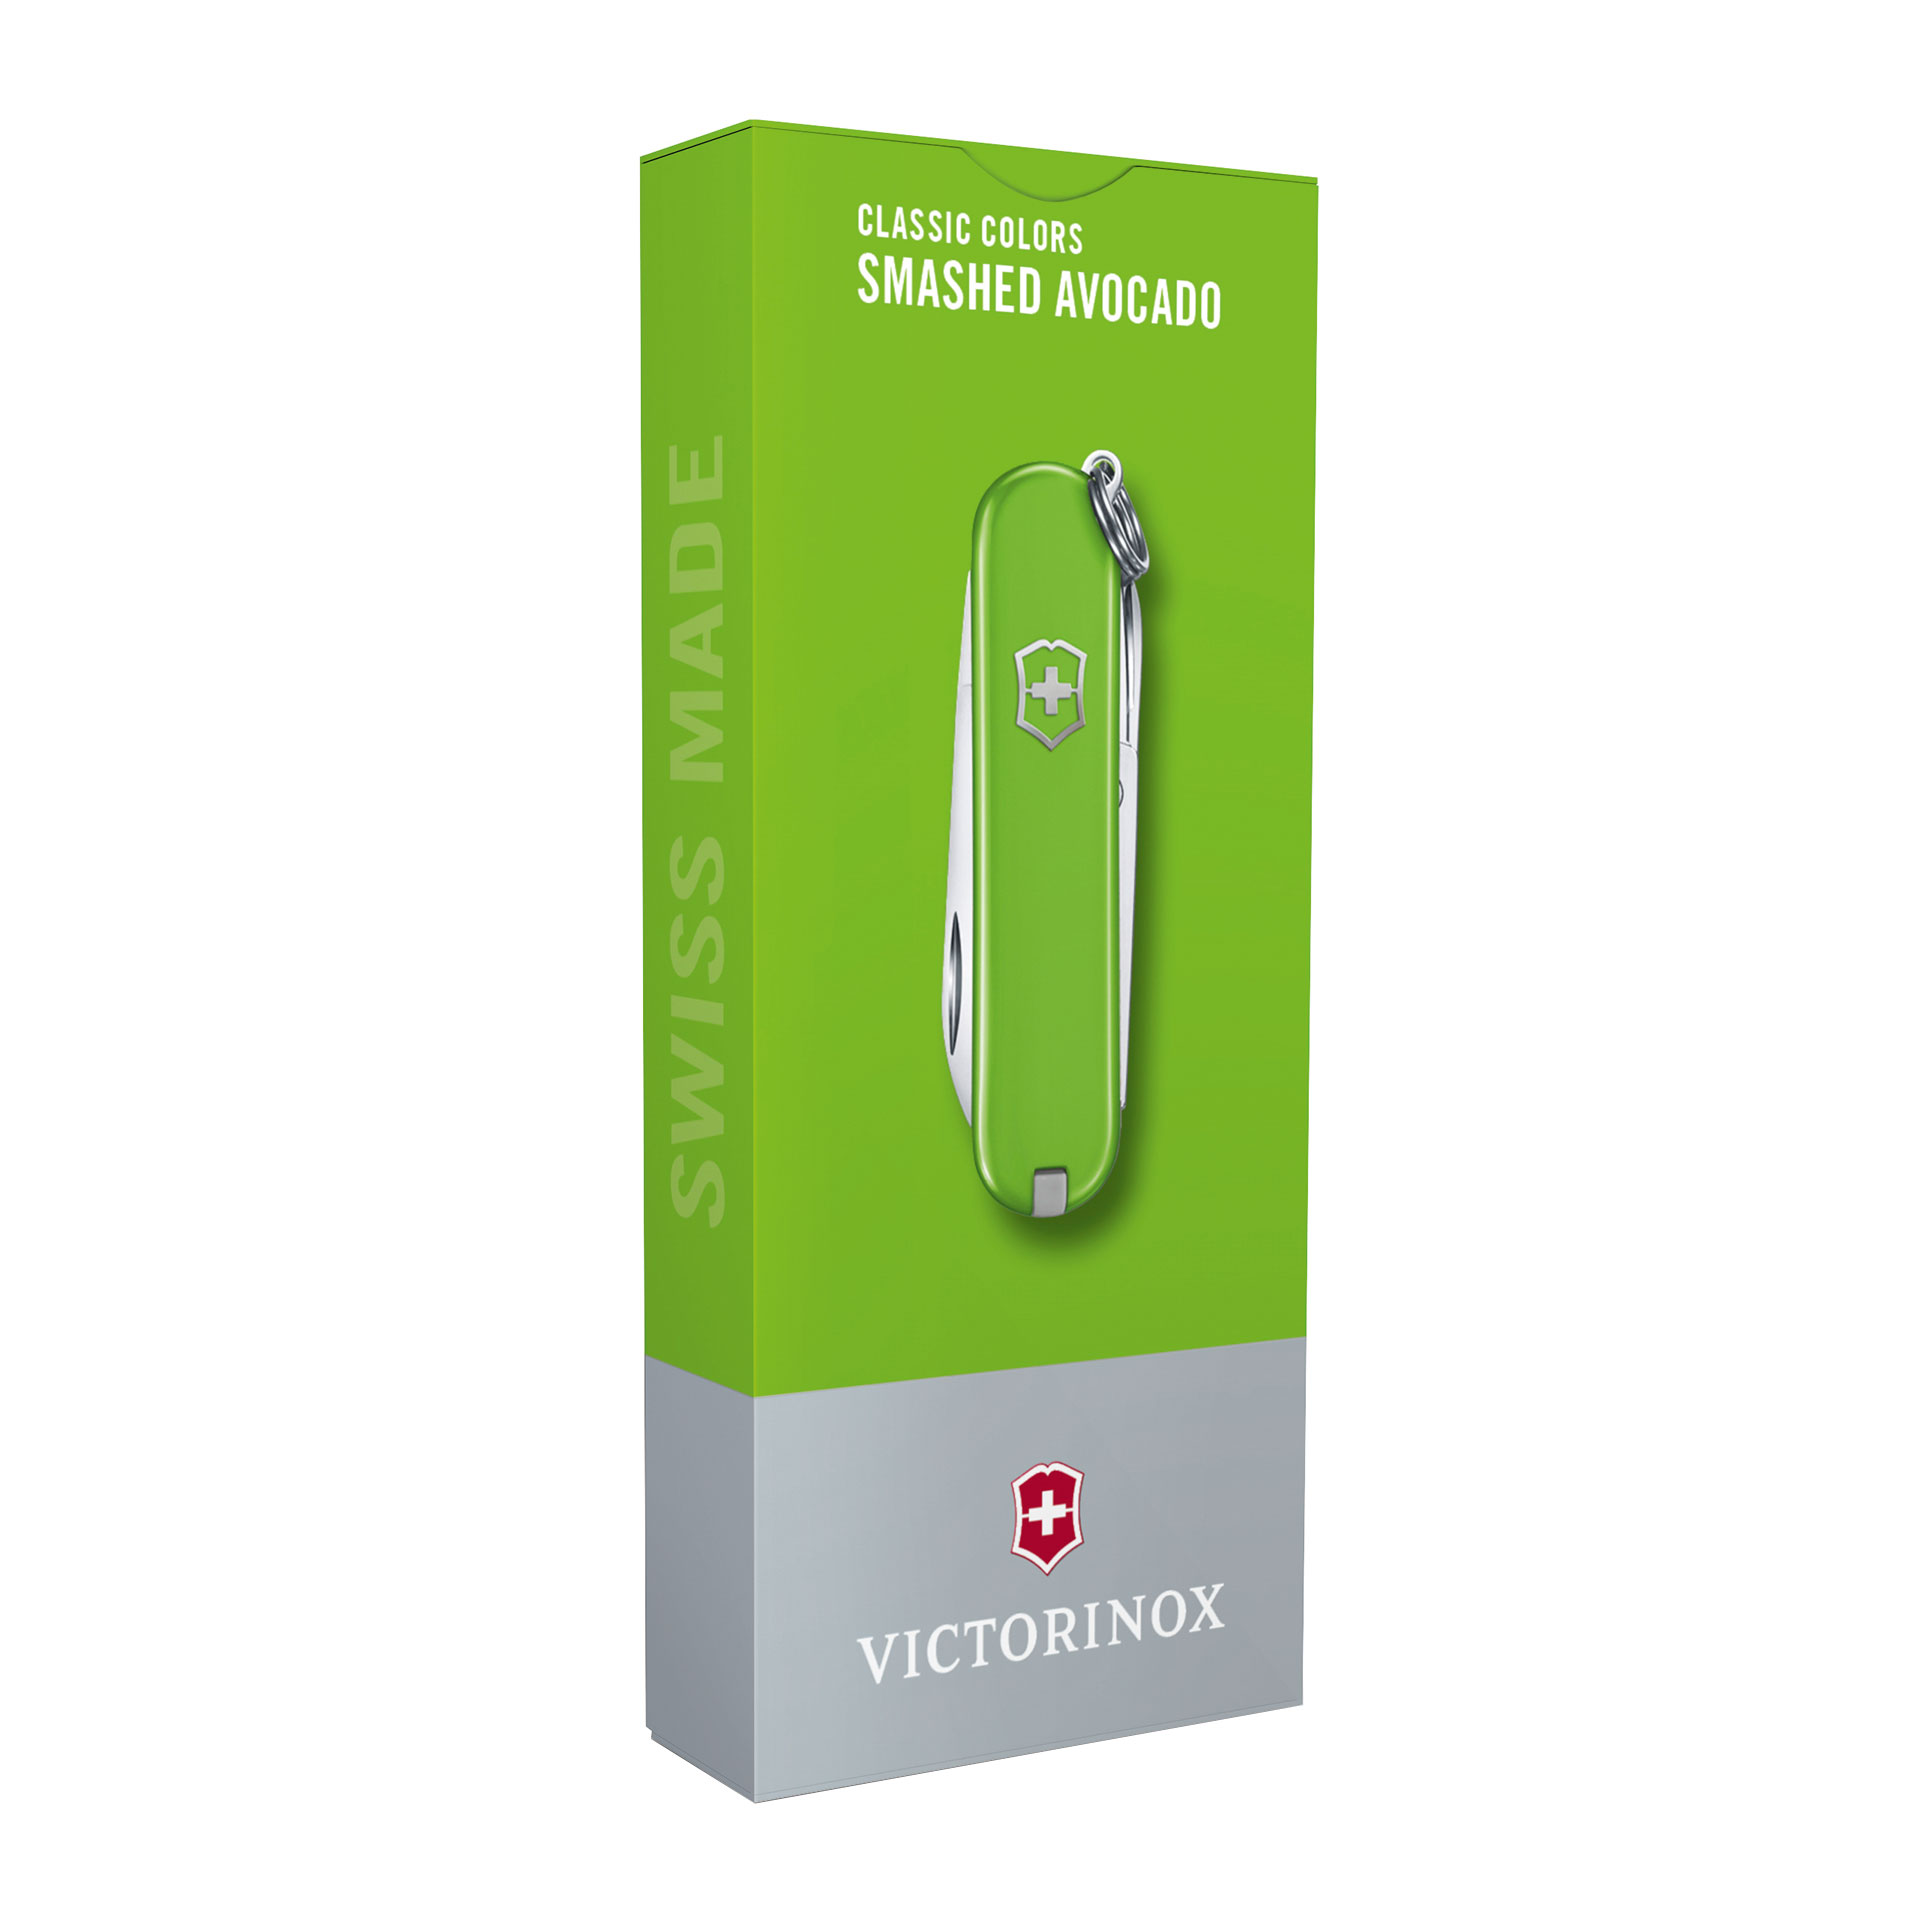 VICTORINOX Classic SD Taschenmesser mit 7 Funktionen 58mm smashed avocado